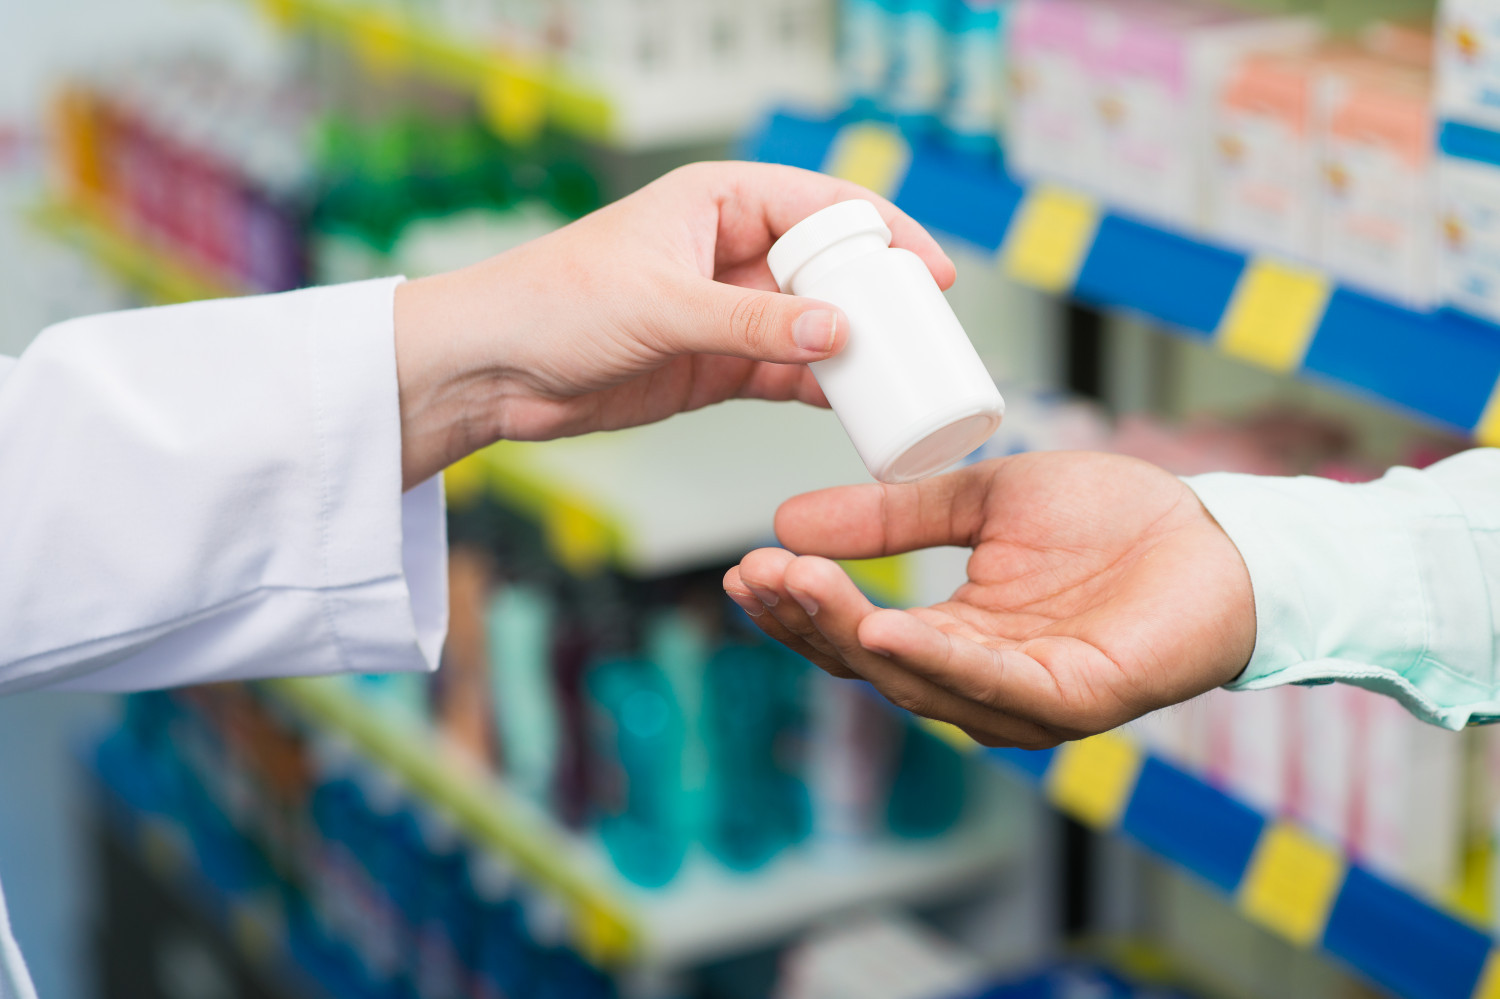 Скупка лекарств: важные аспекты перед покупкой